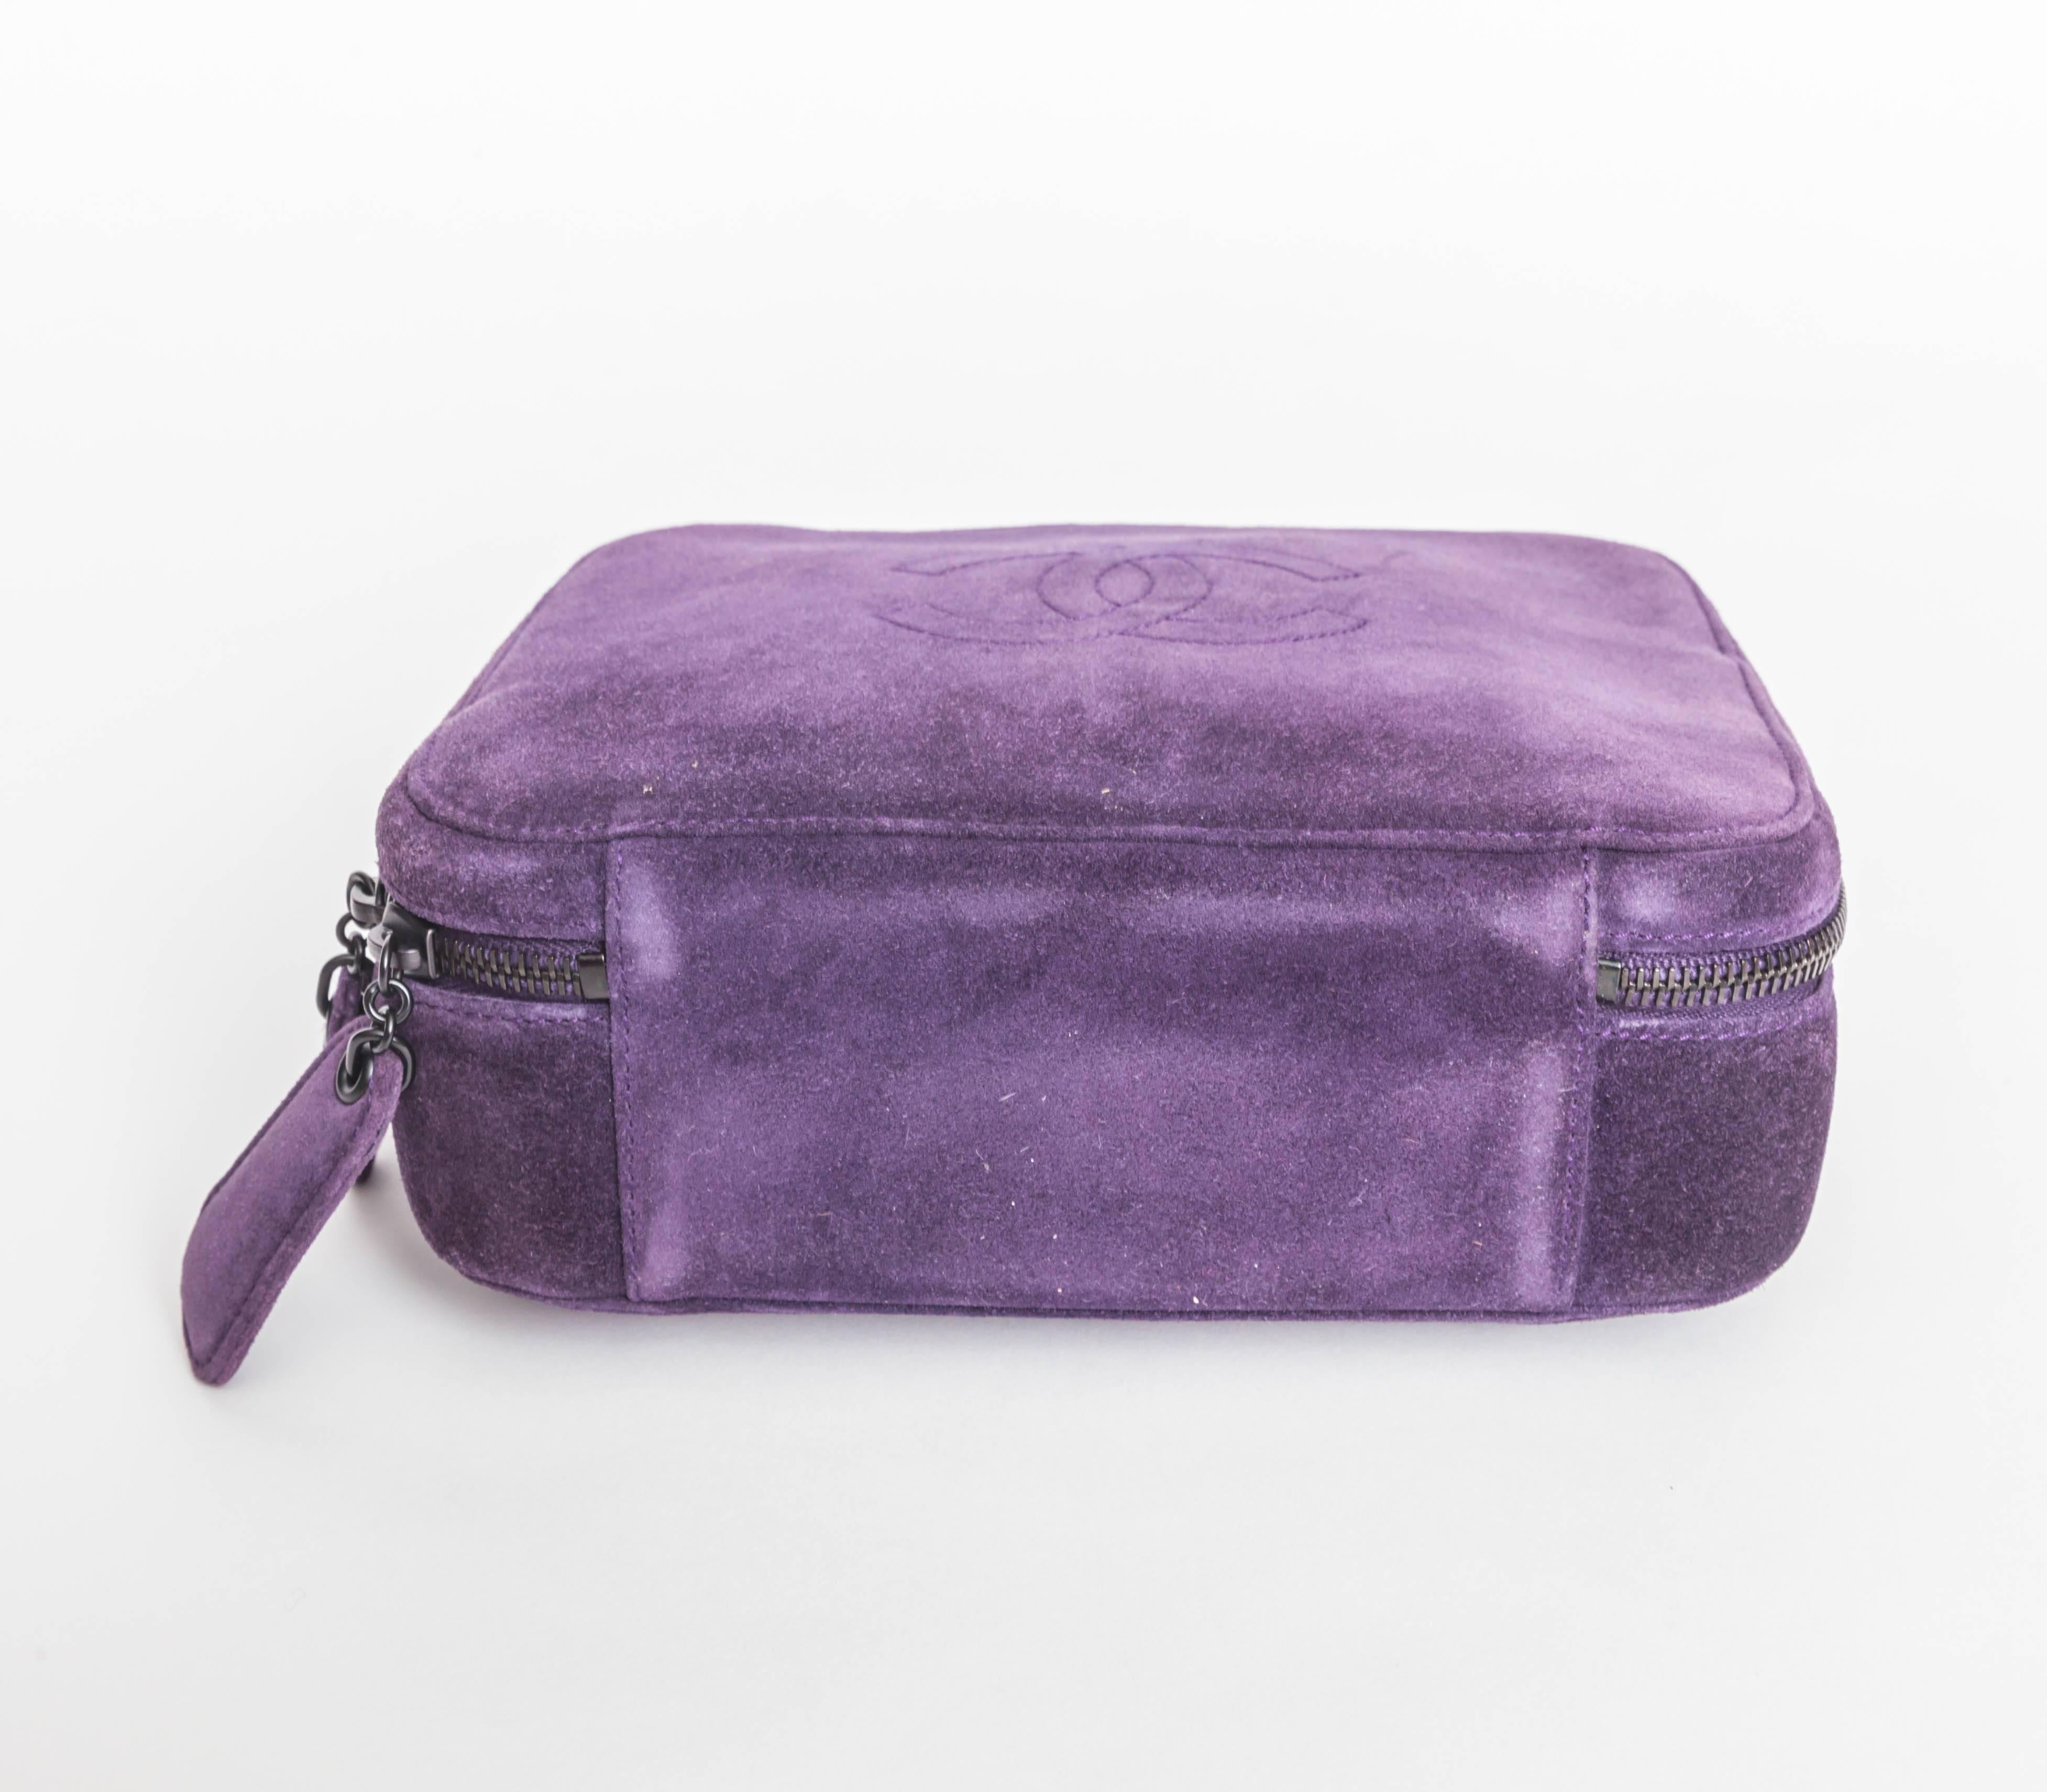 Vintage Purple Suede Chanel Bag - 1997 - 1999 1